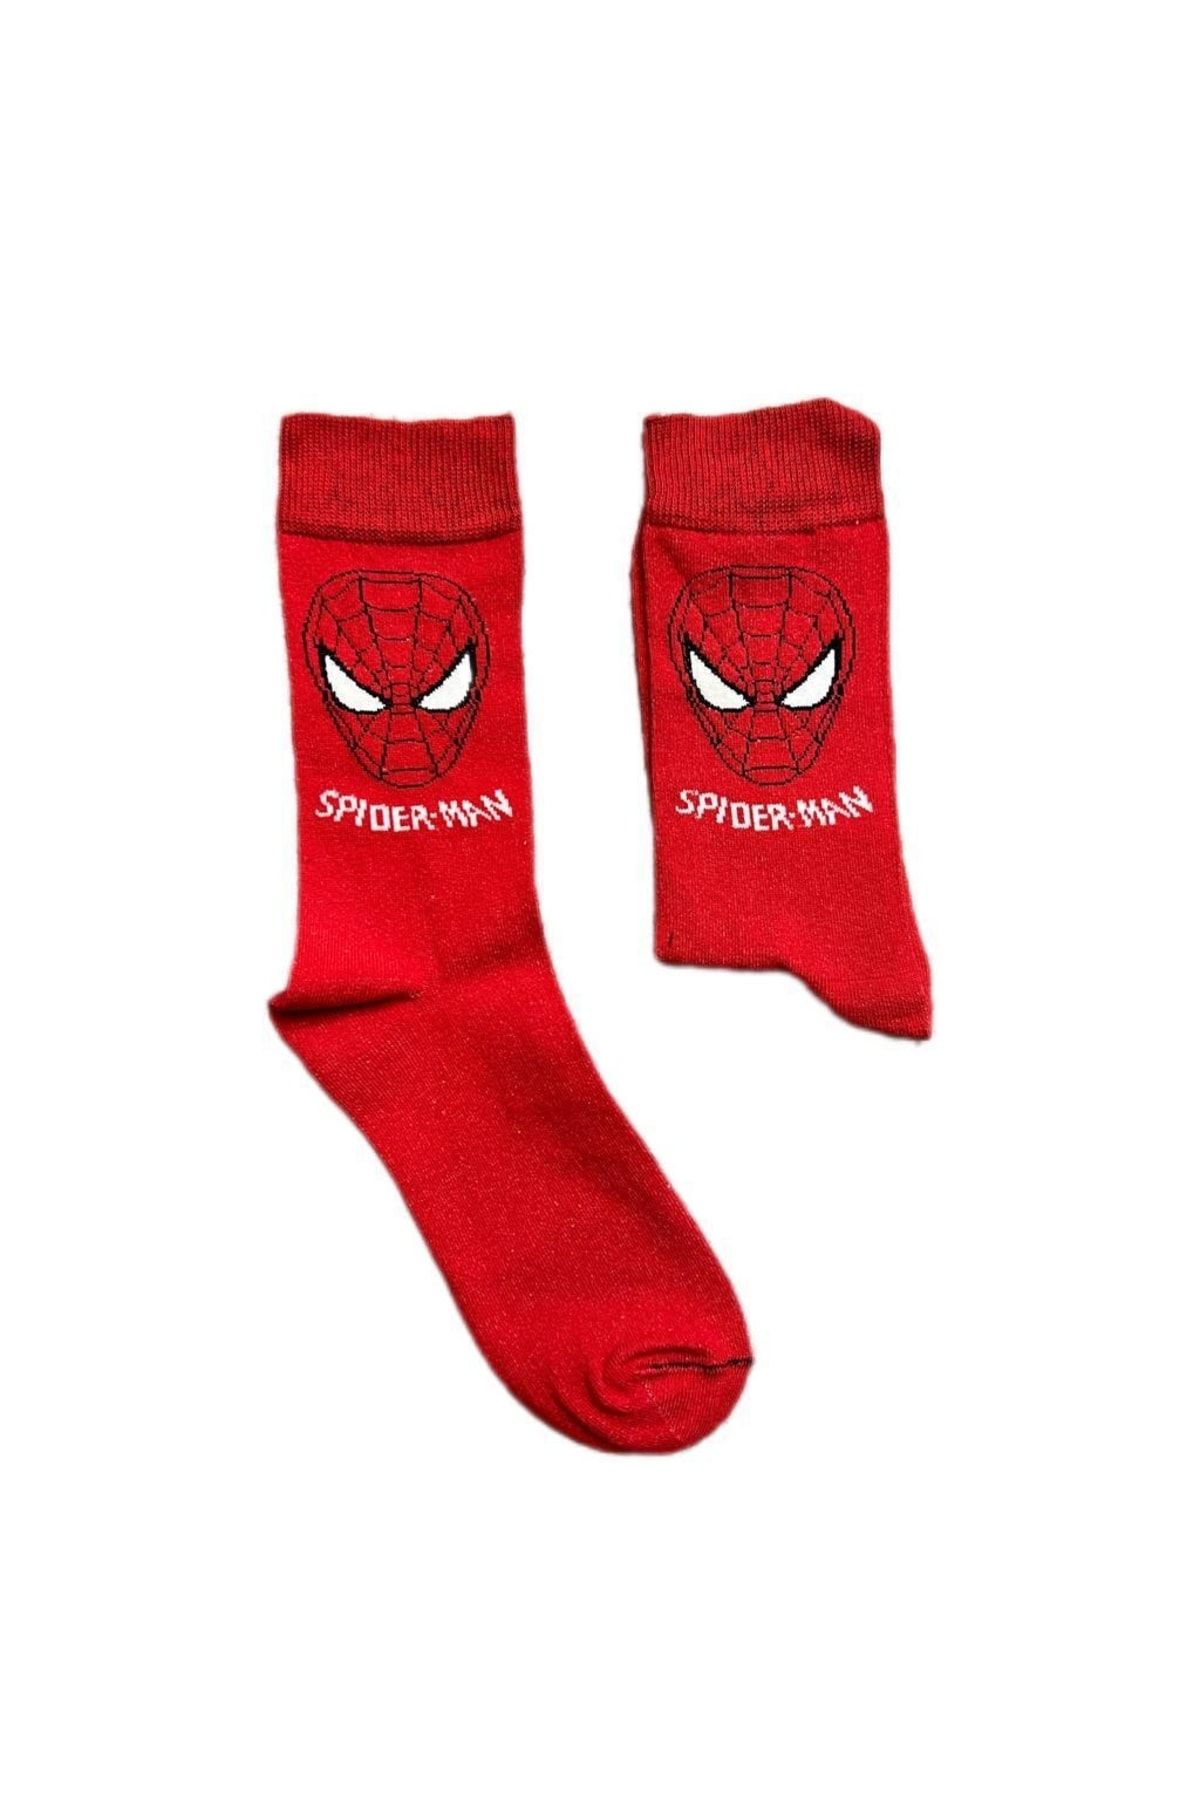 Kuzgunshop Örümcek Adam (spider Man) Kırmızı Unisex Çorap